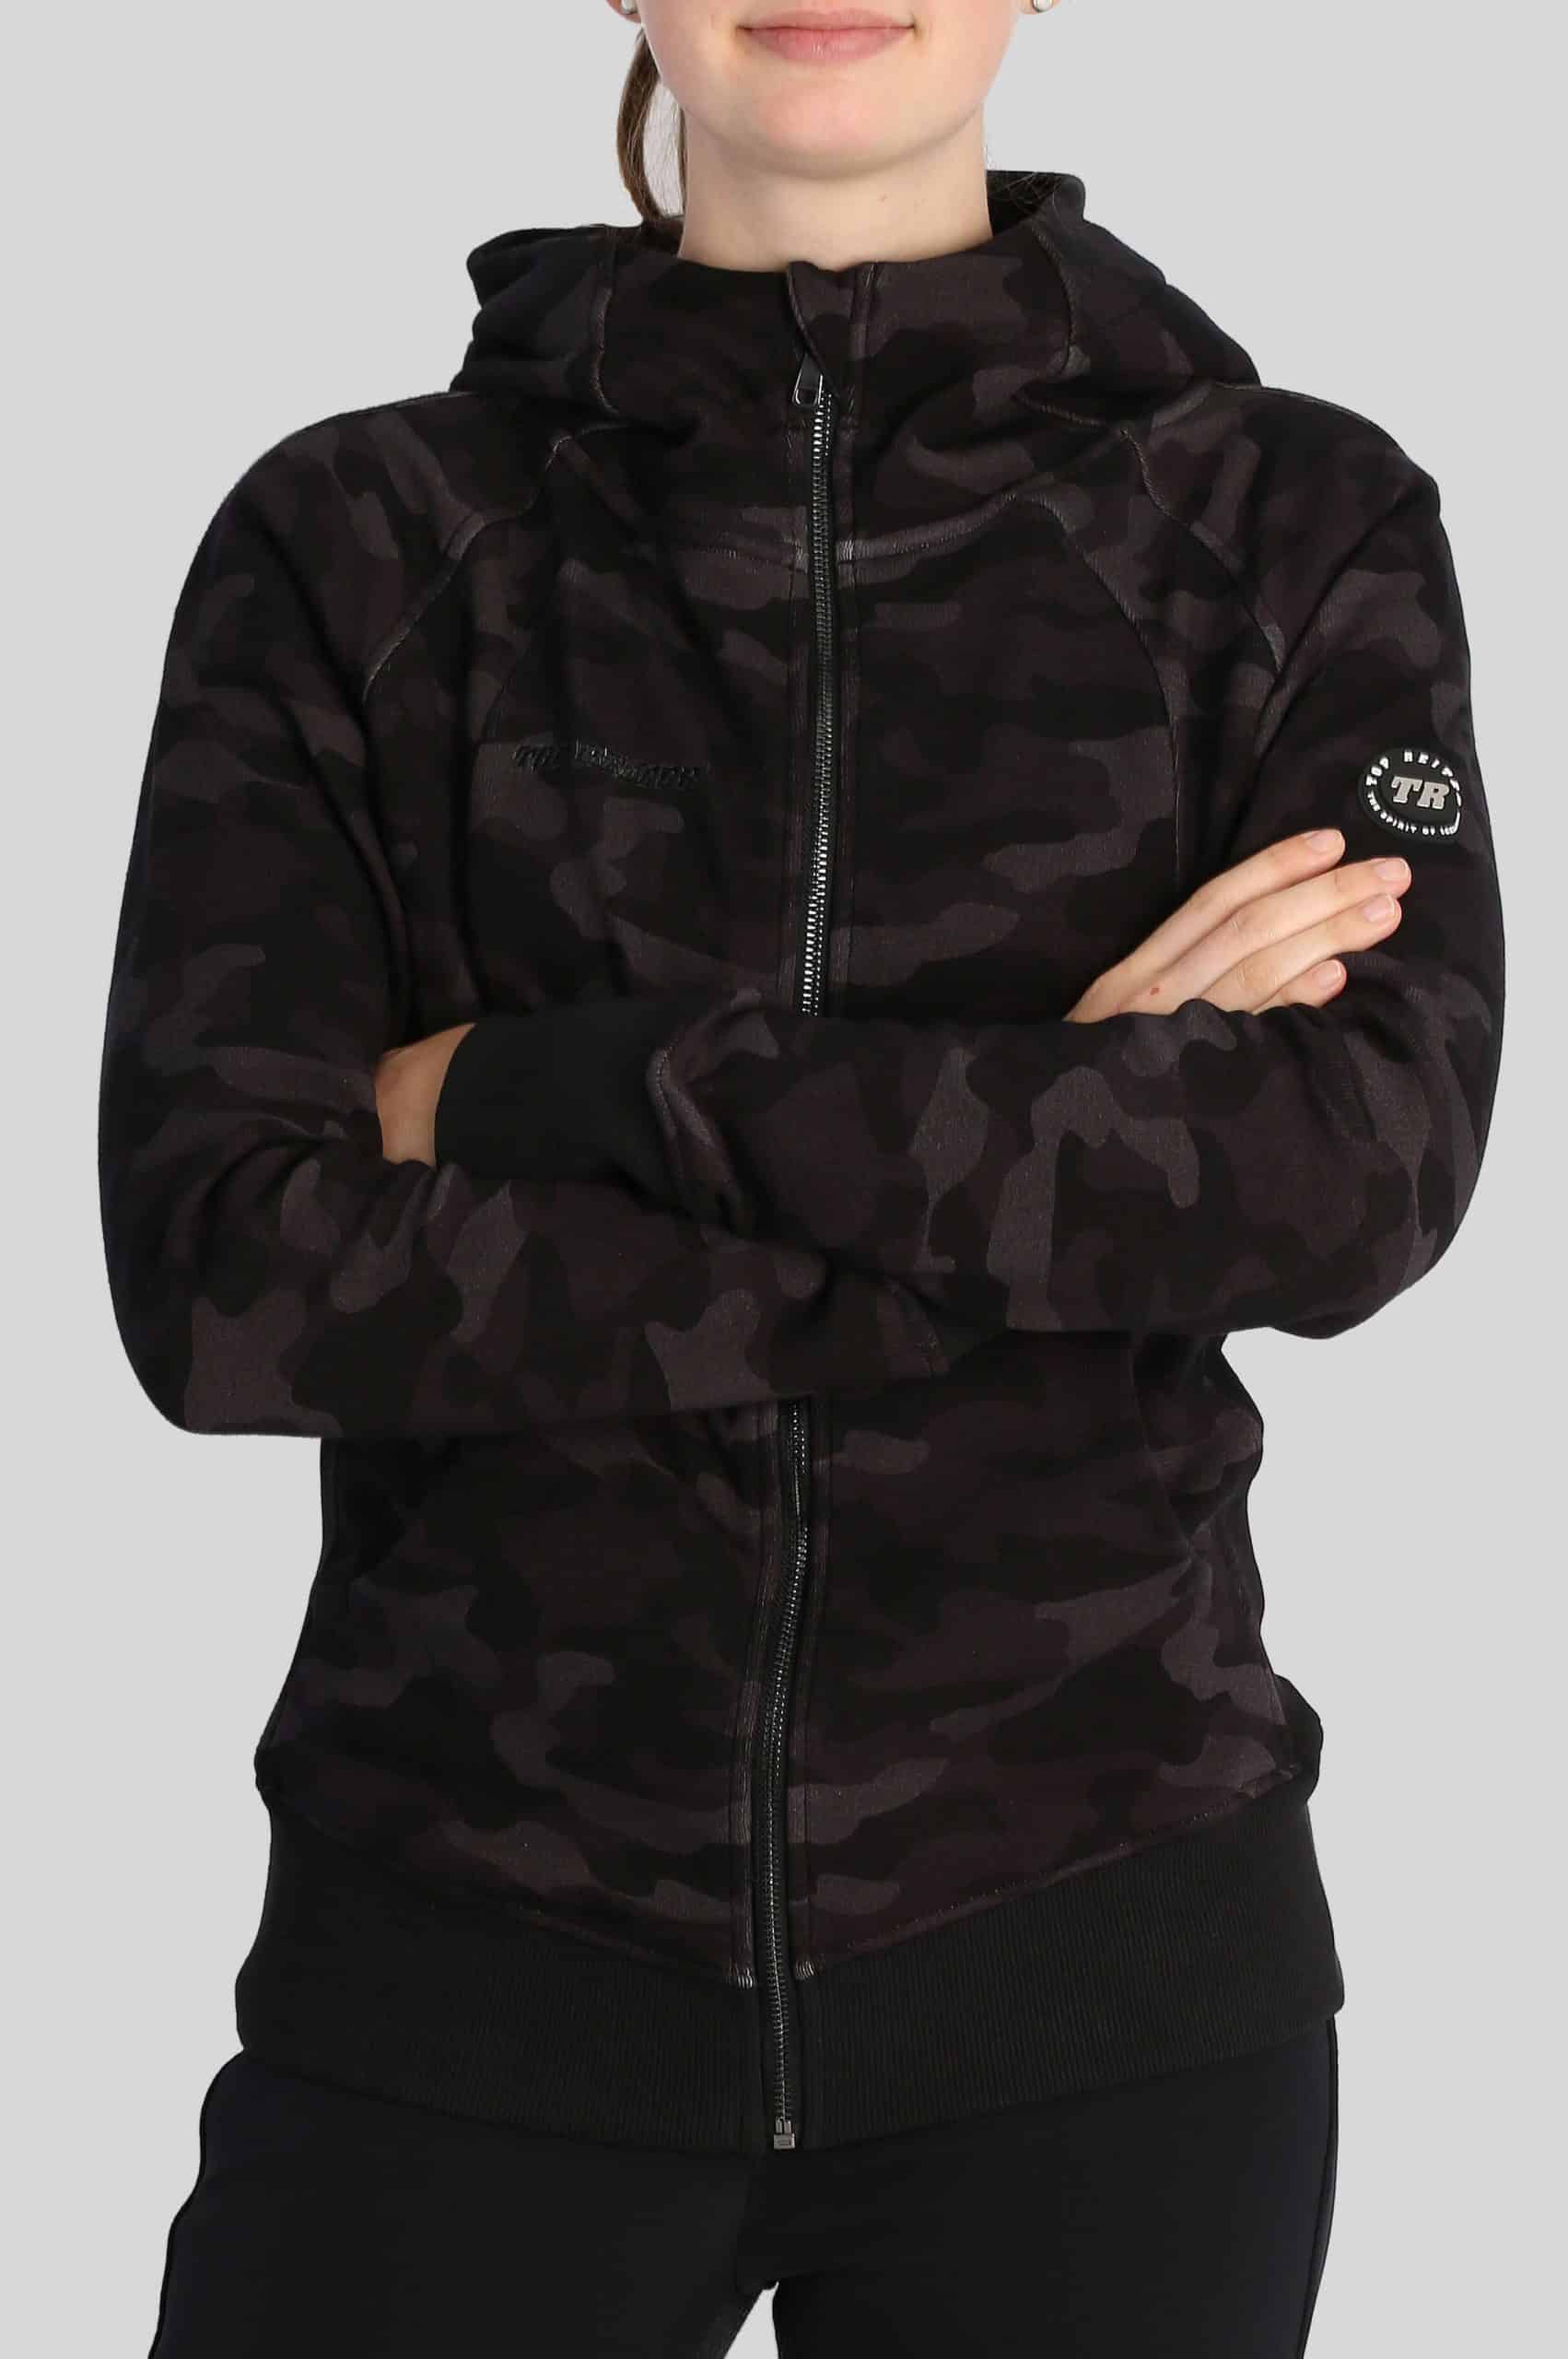 TOP REITER Sweatshirt med lynlås og hætte – Fold – Camouflage